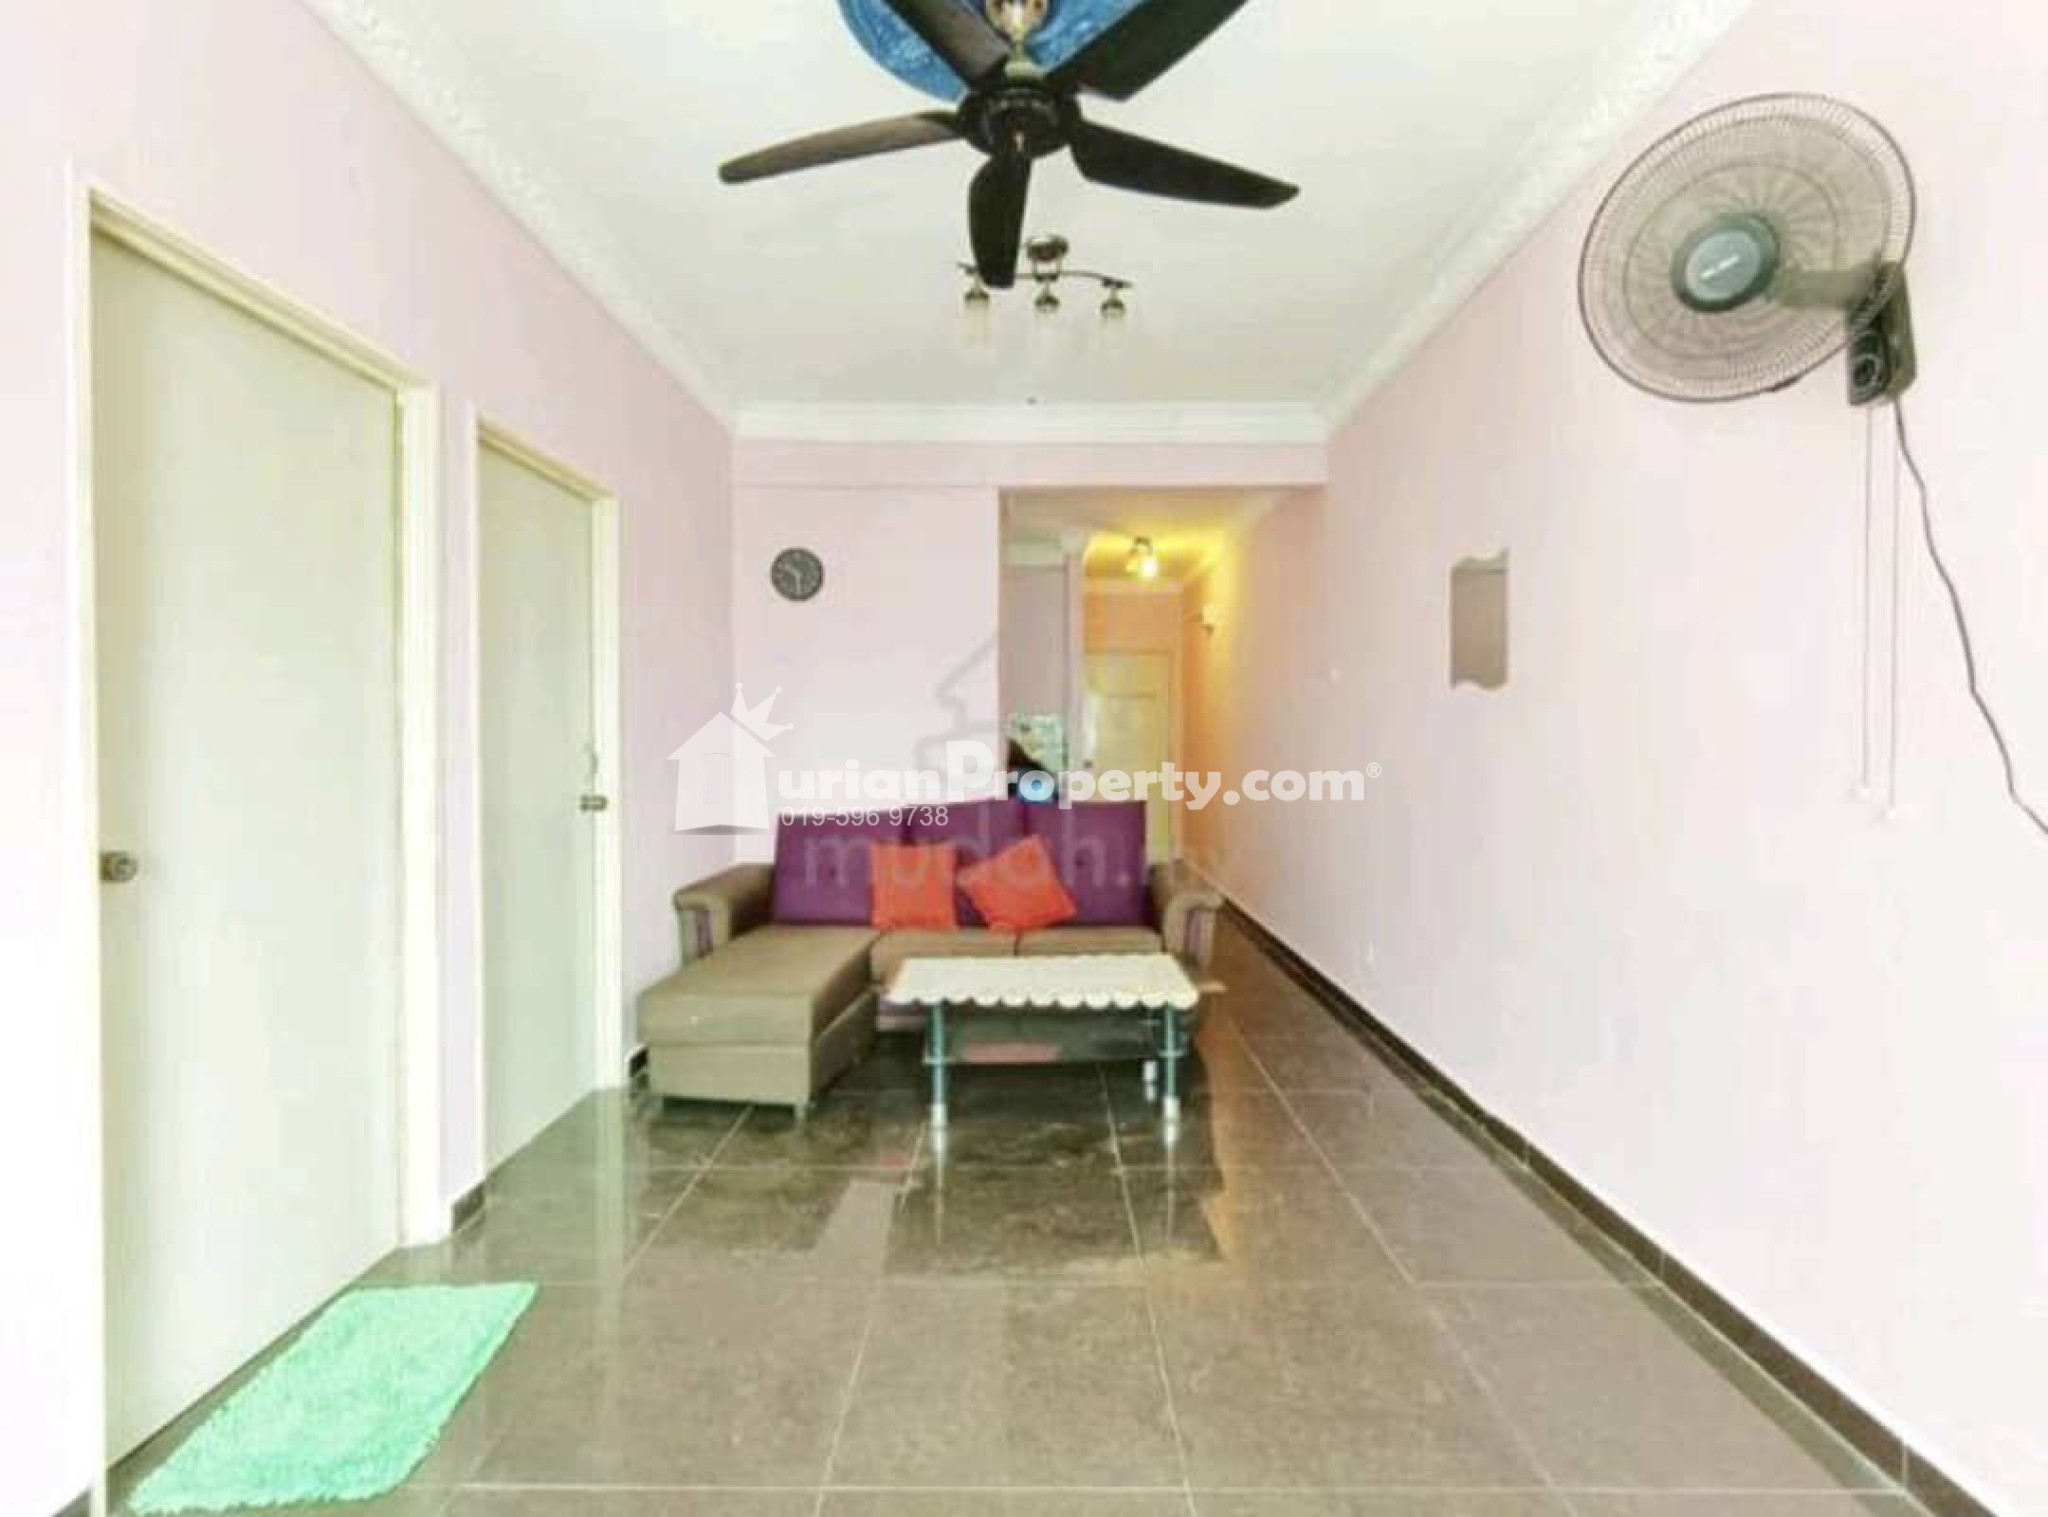 Apartment For Sale at Pangsapuri Berembang Indah